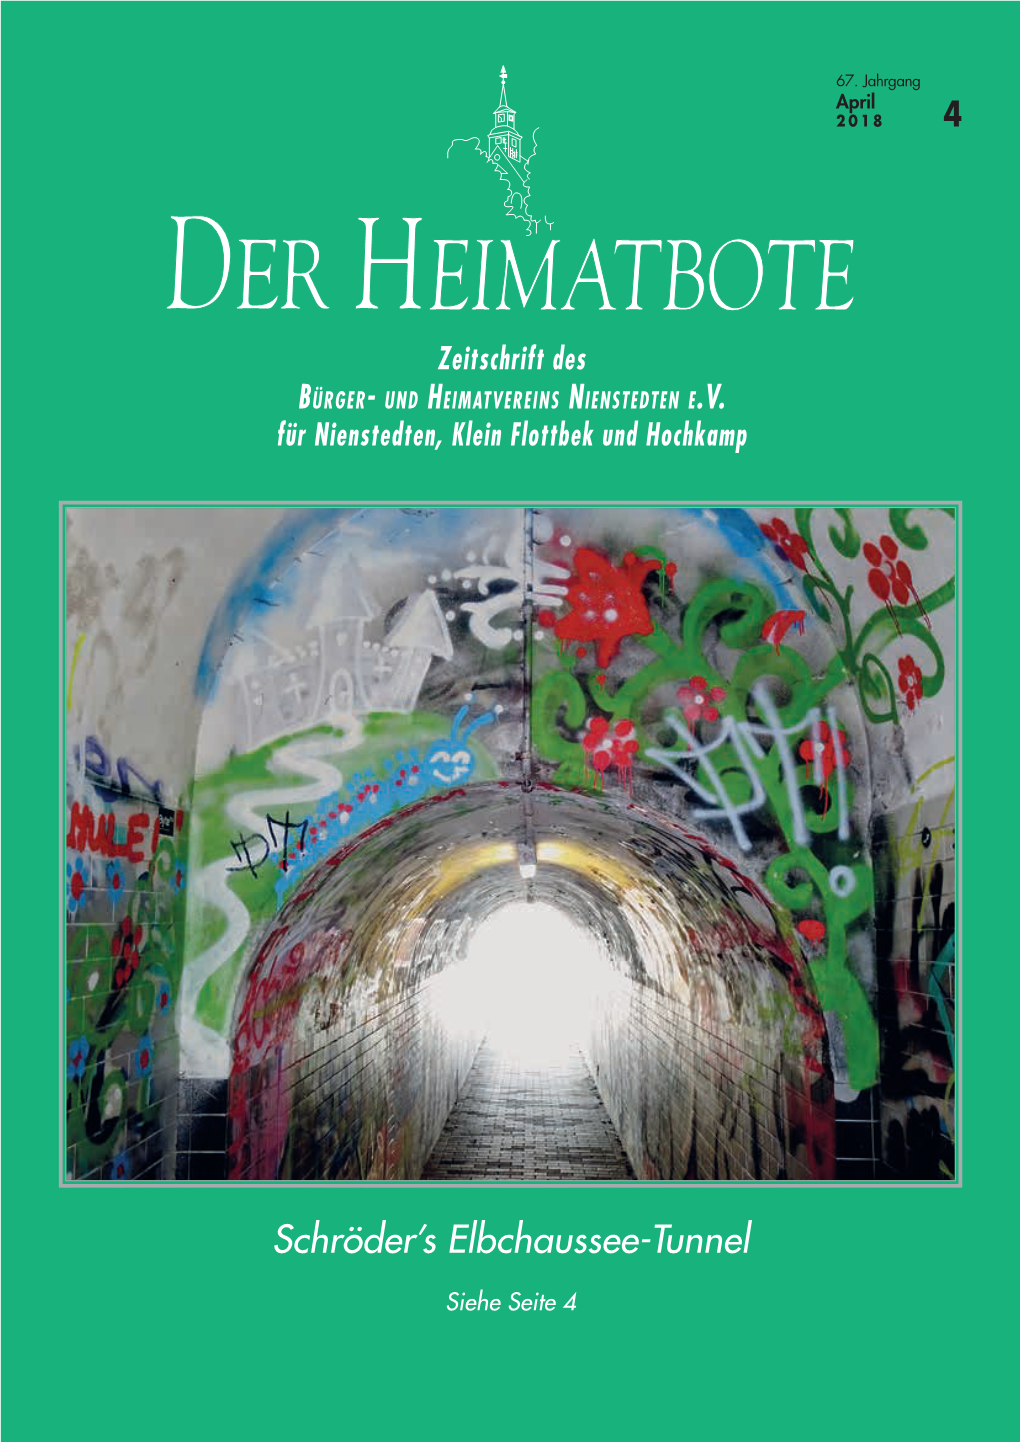 Schröder's Elbchaussee-Tunnel